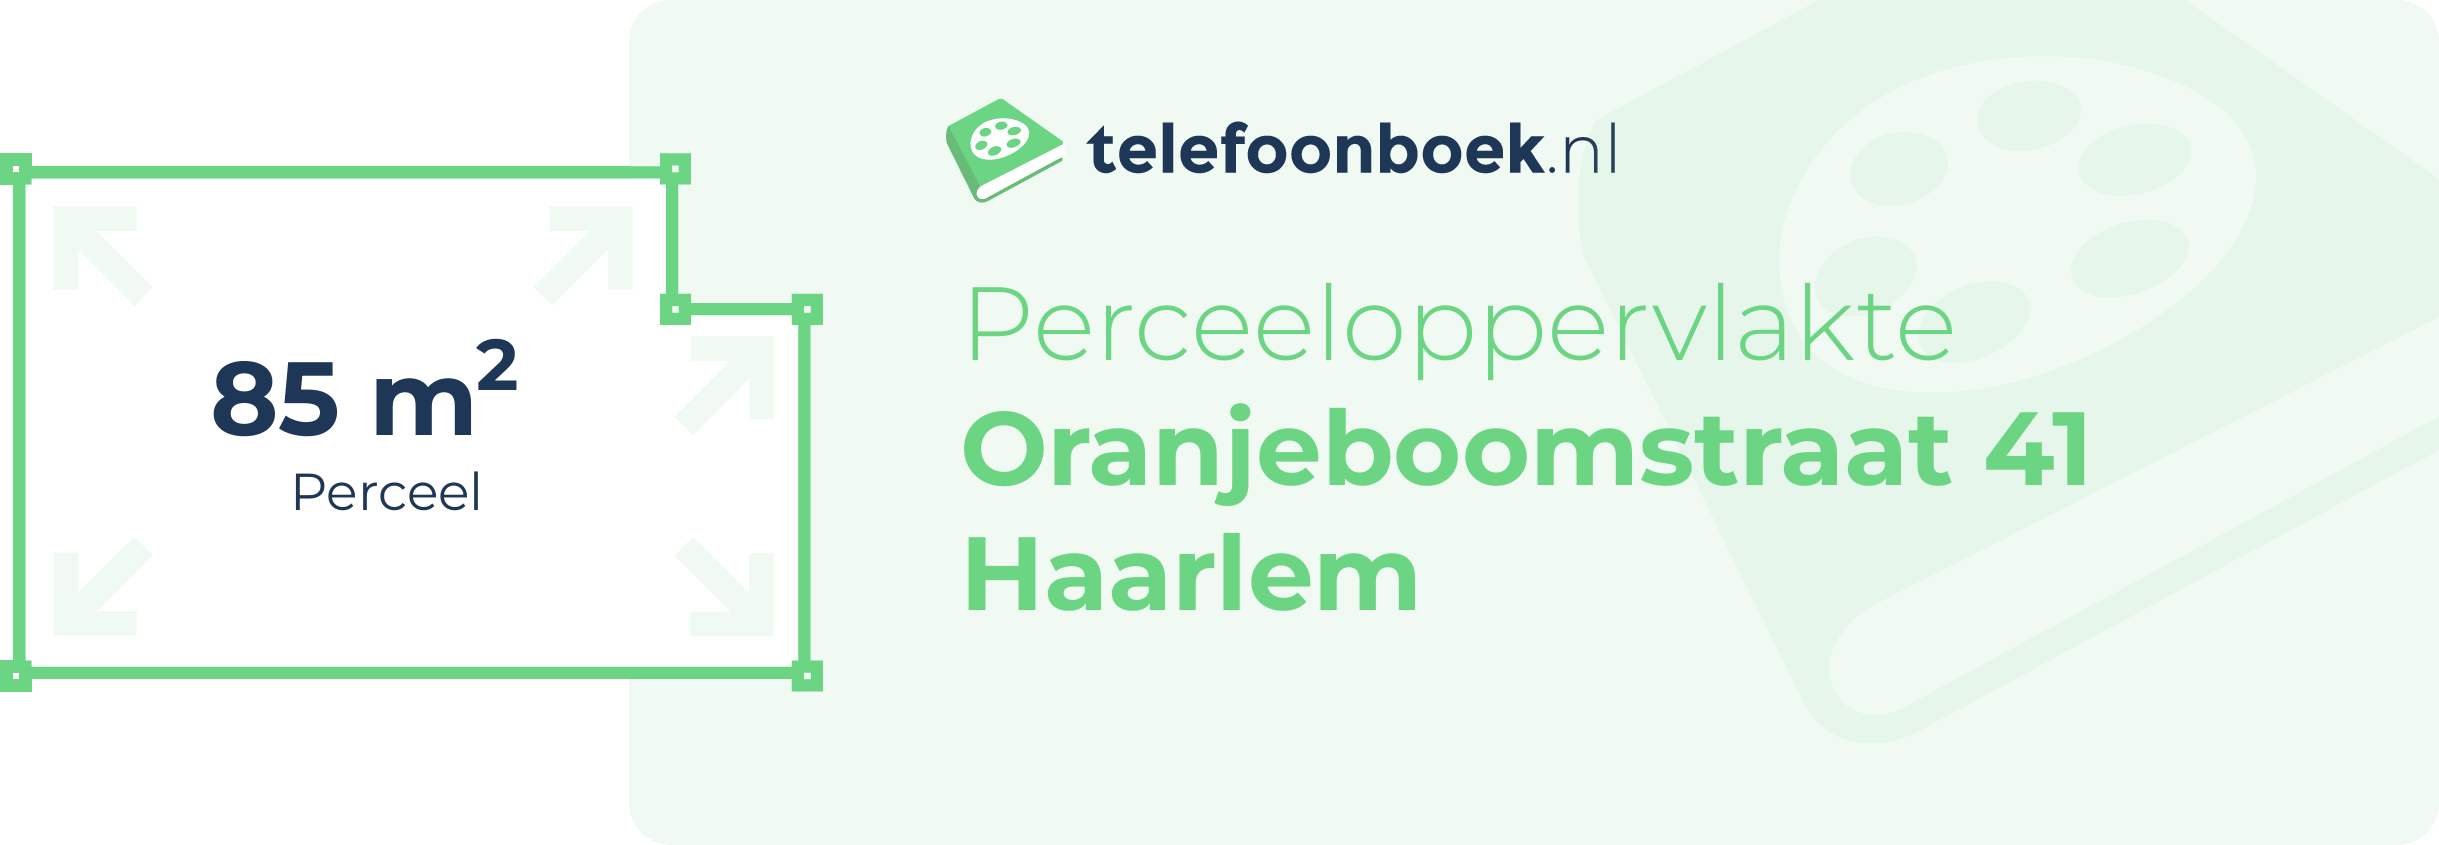 Perceeloppervlakte Oranjeboomstraat 41 Haarlem